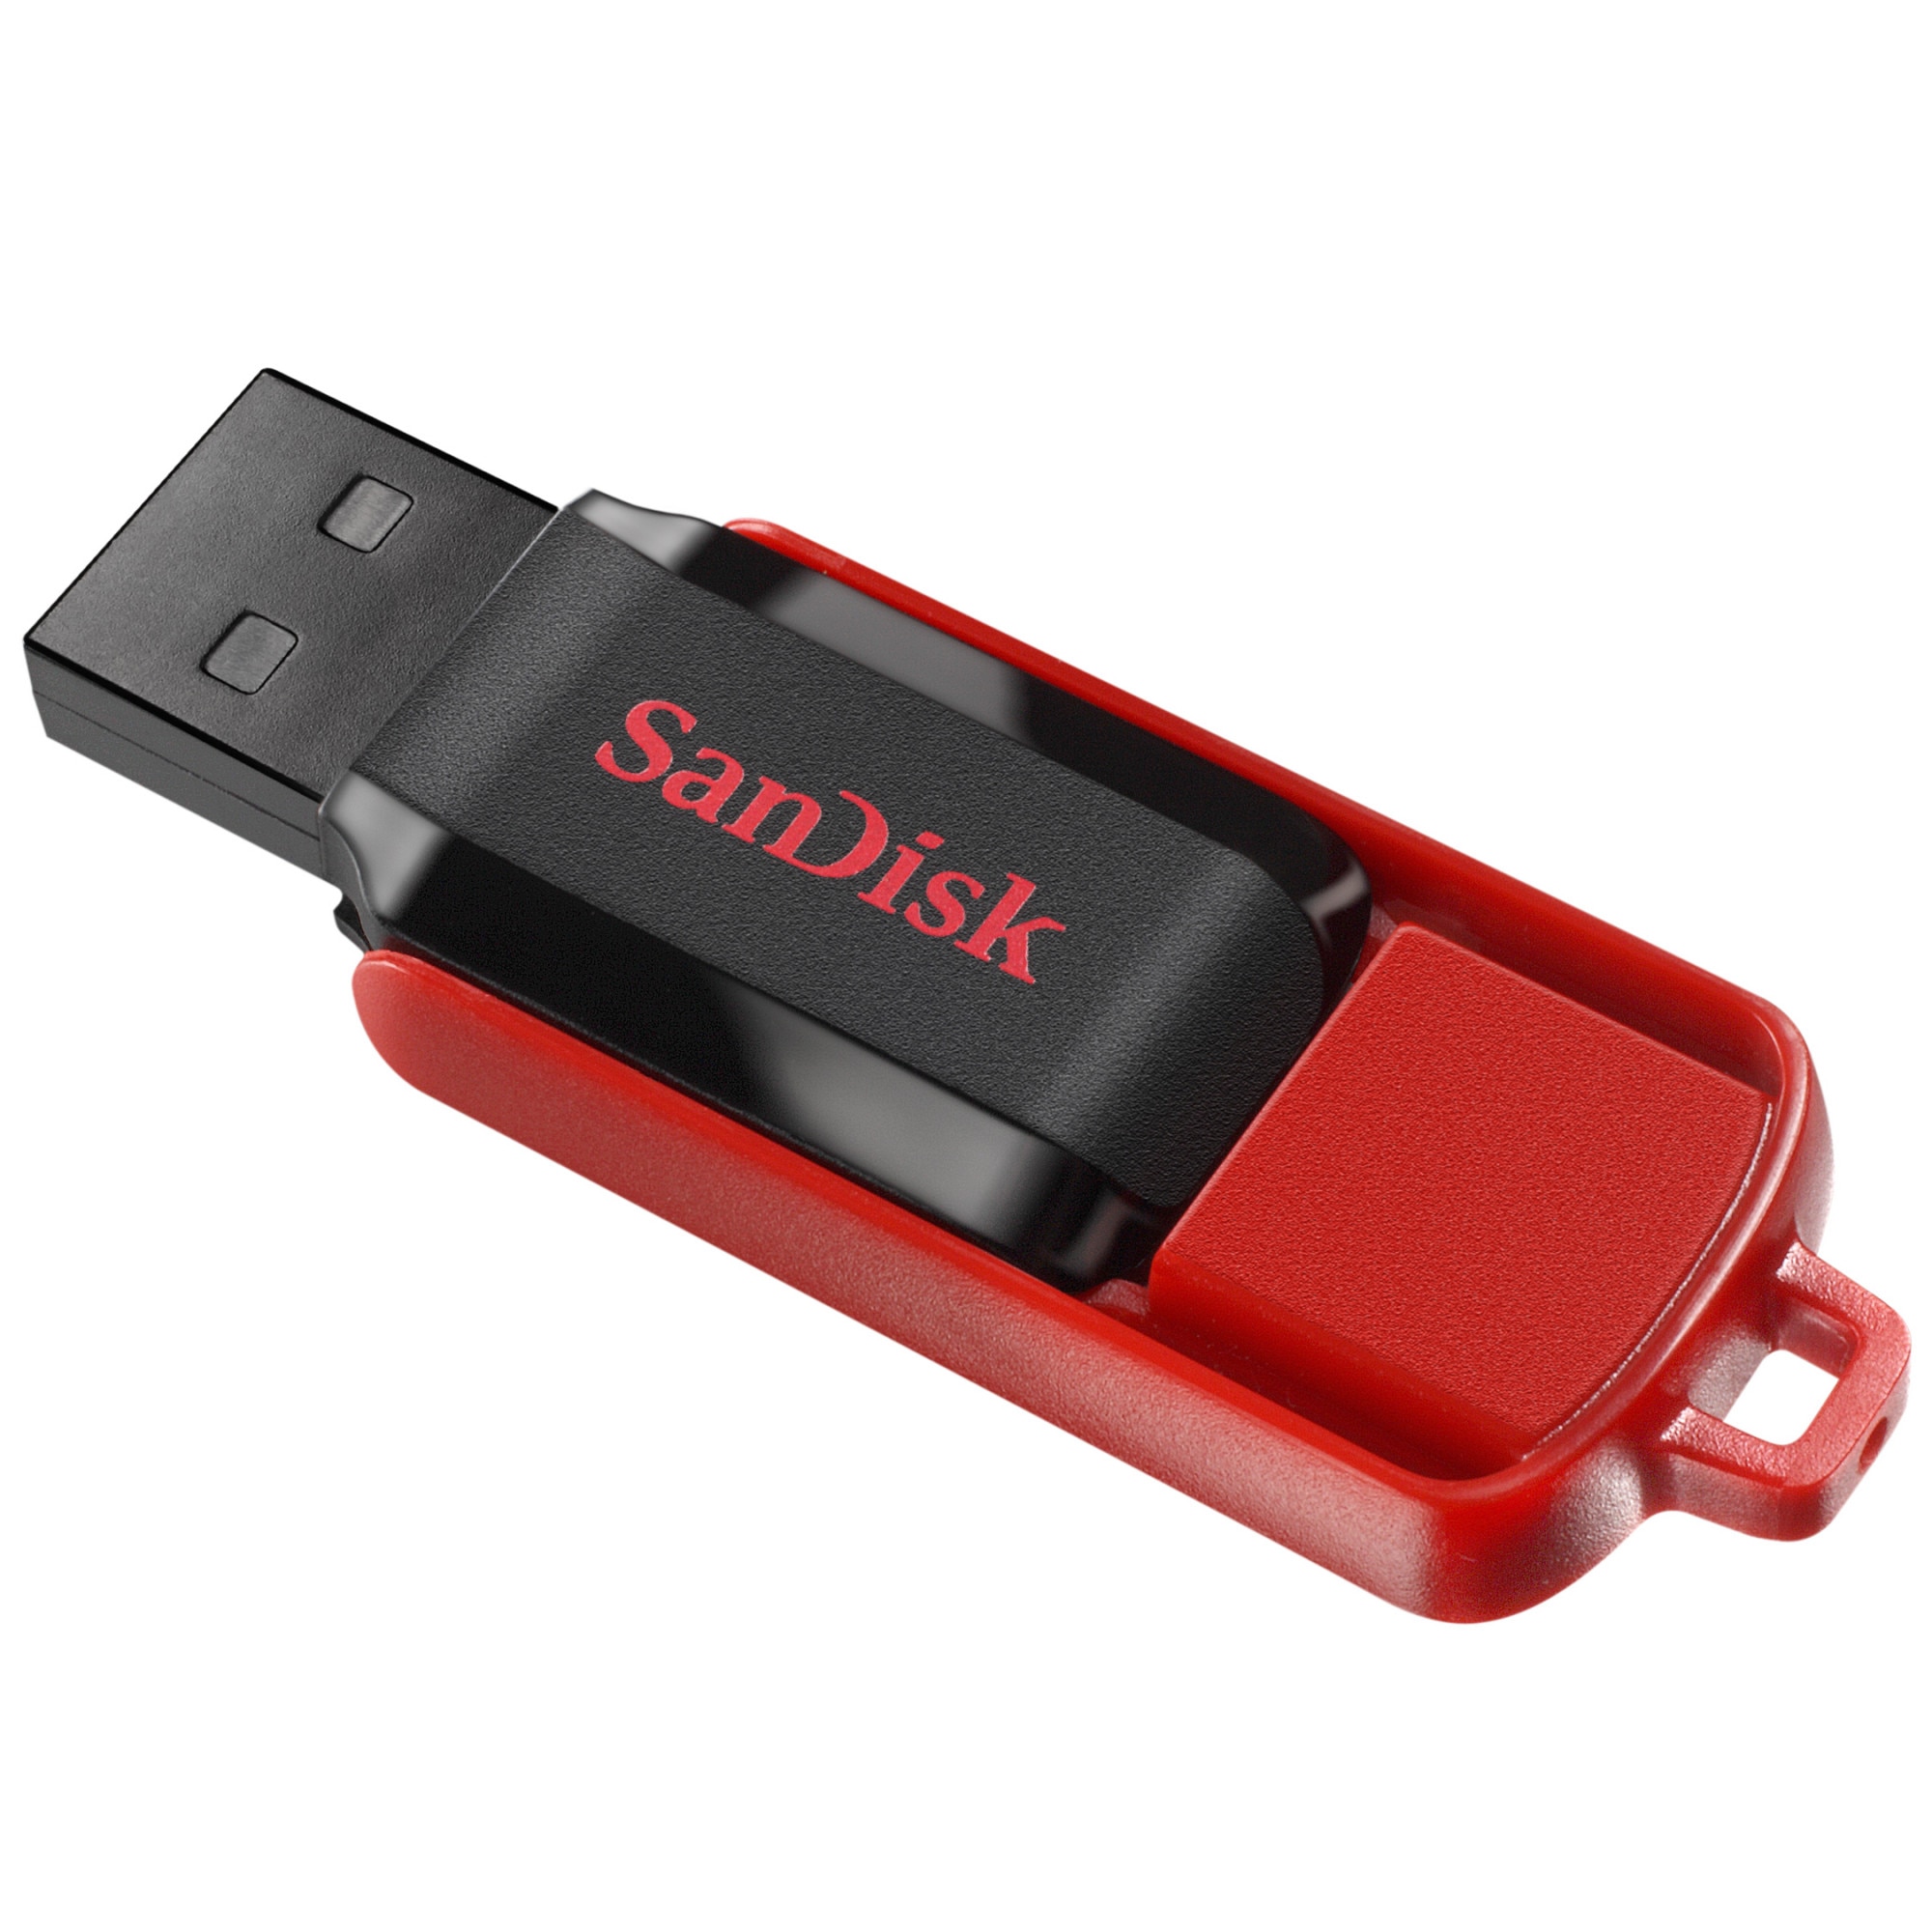 Производители flash. Флешка САНДИСК 64 ГБ. Флешка SANDISK 32gb. Флешка САНДИСК 32 ГБ. USB-флешка SANDISK 8 GB.